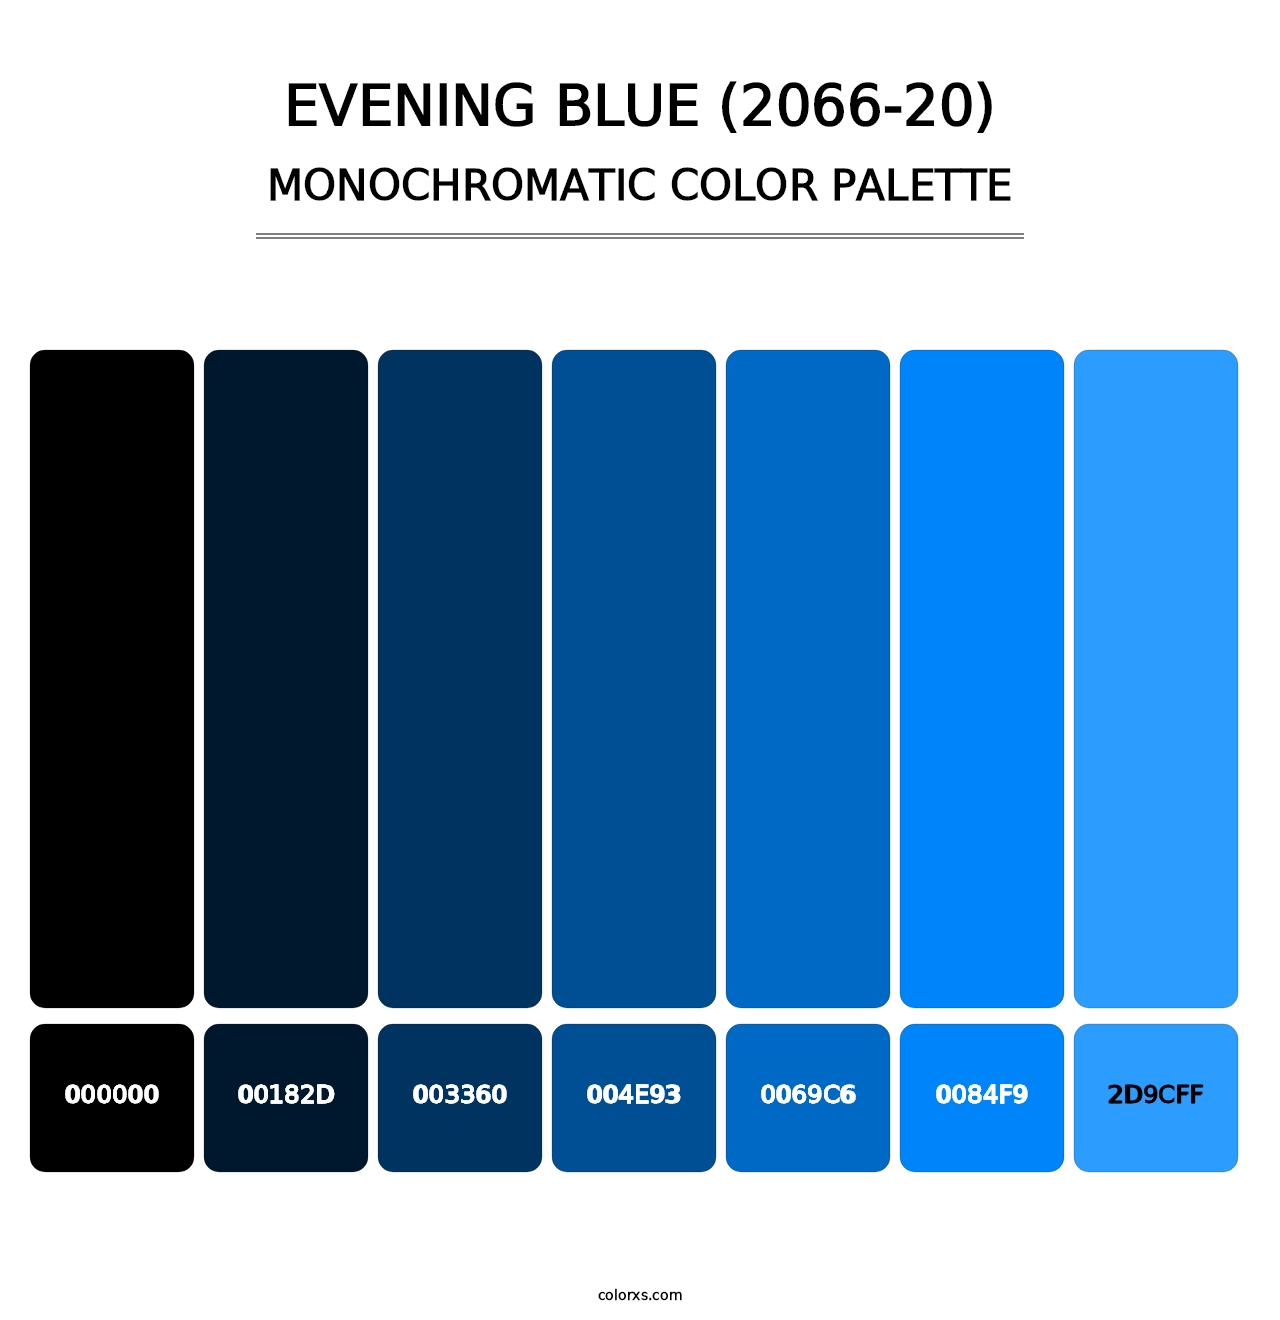 Evening Blue (2066-20) - Monochromatic Color Palette